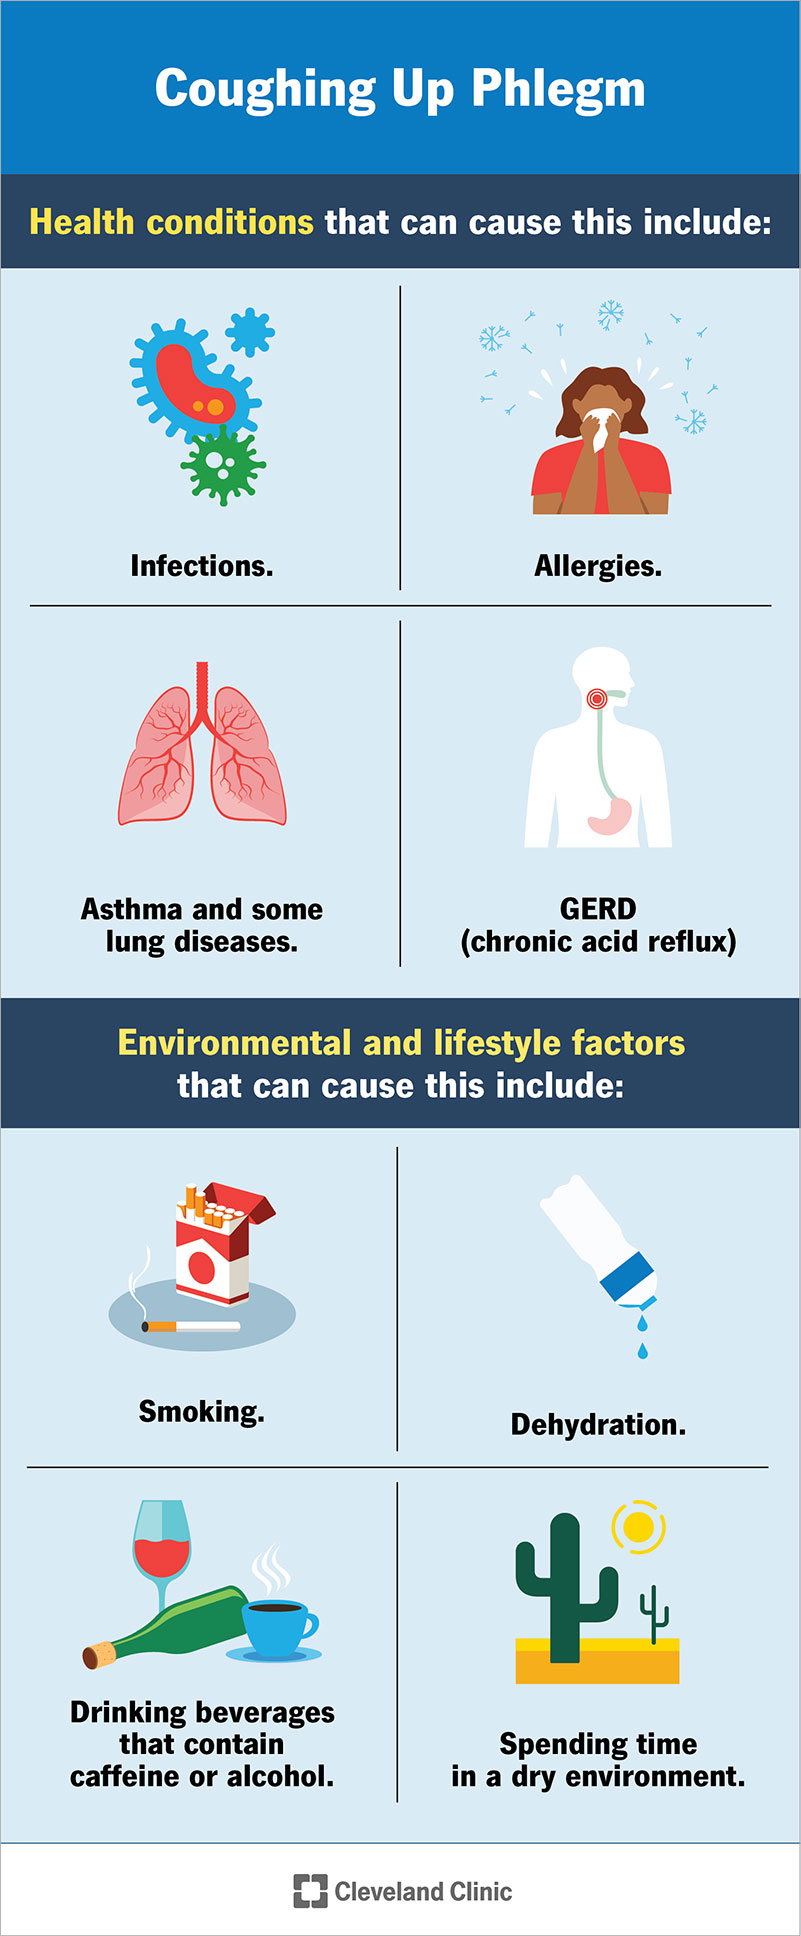 Fattori che causano la tosse con catarro: infezioni, allergie, asma, GERD, ecc.